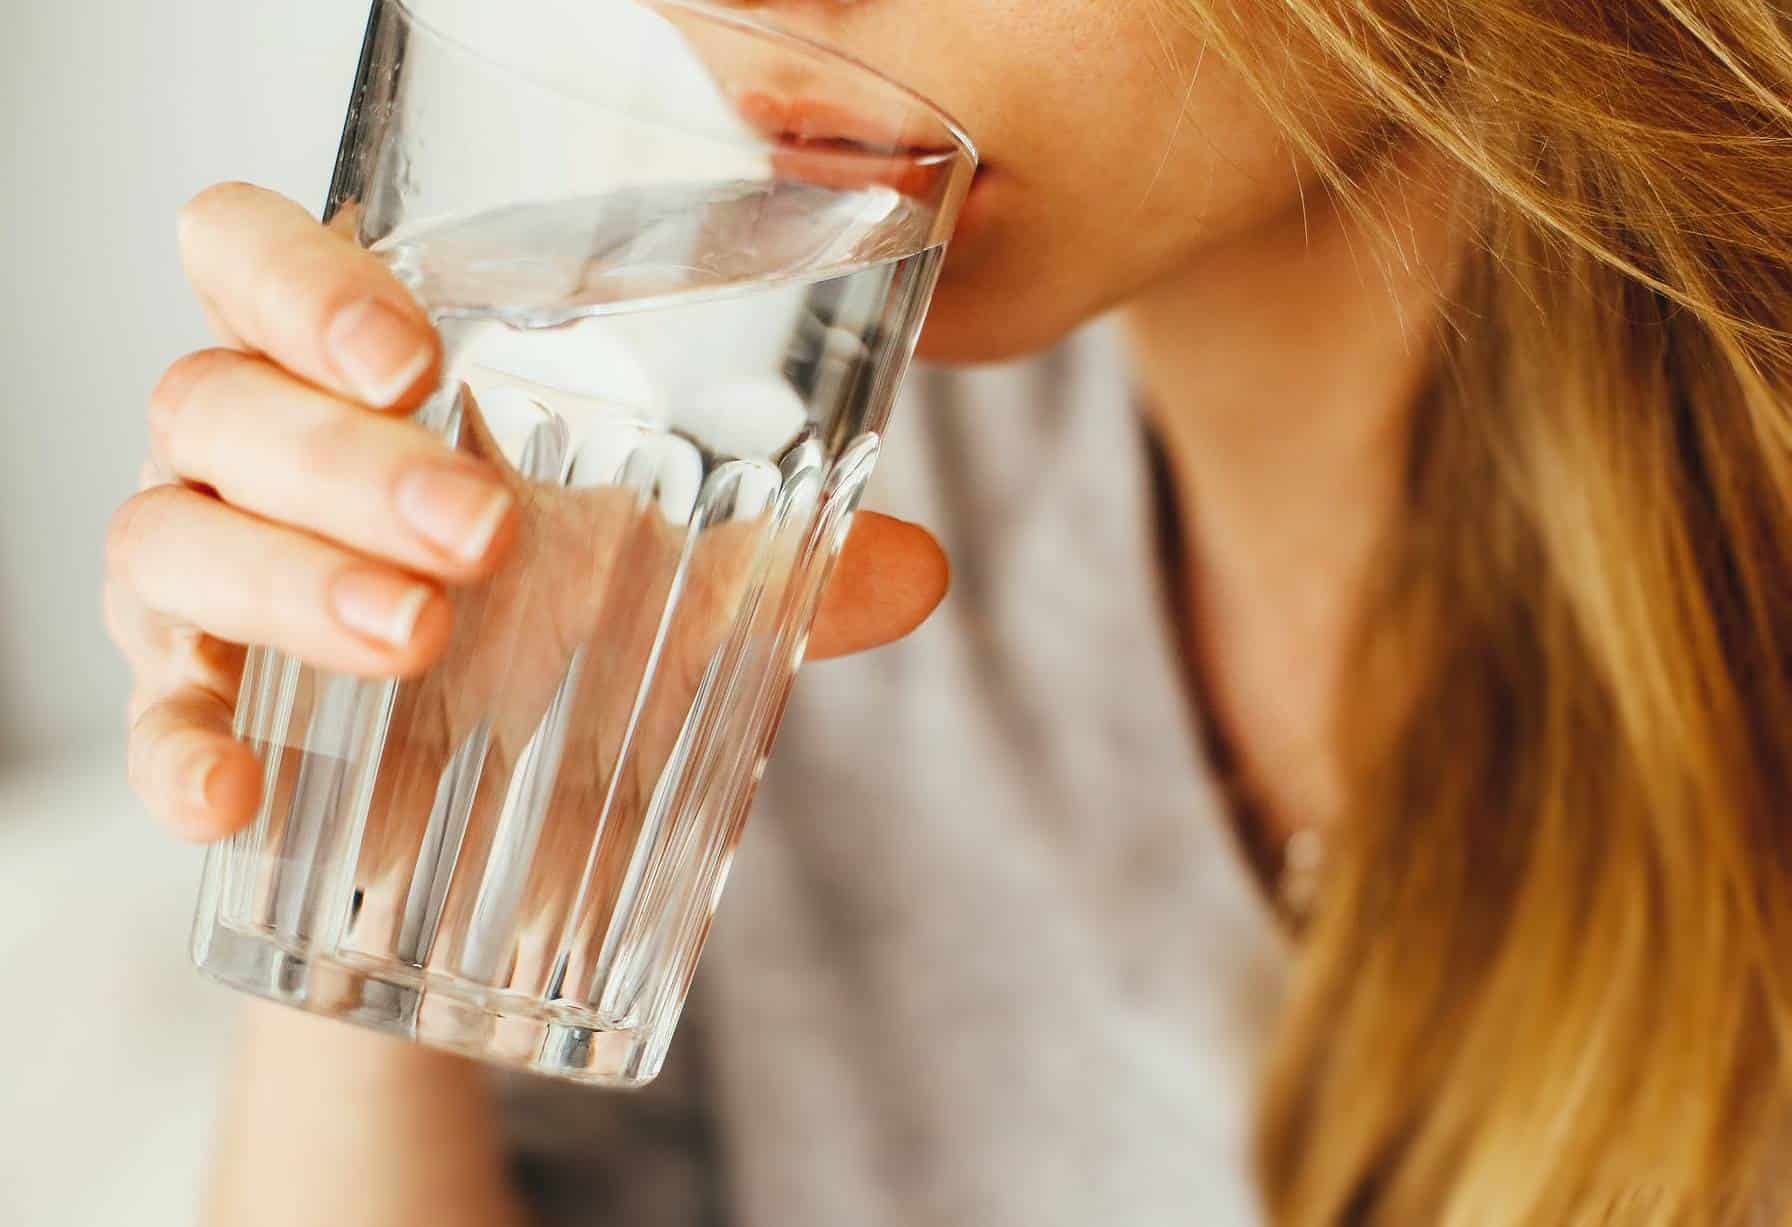 Aprenda sobre os grandes benefícios de beber água morna com o estômago vazio